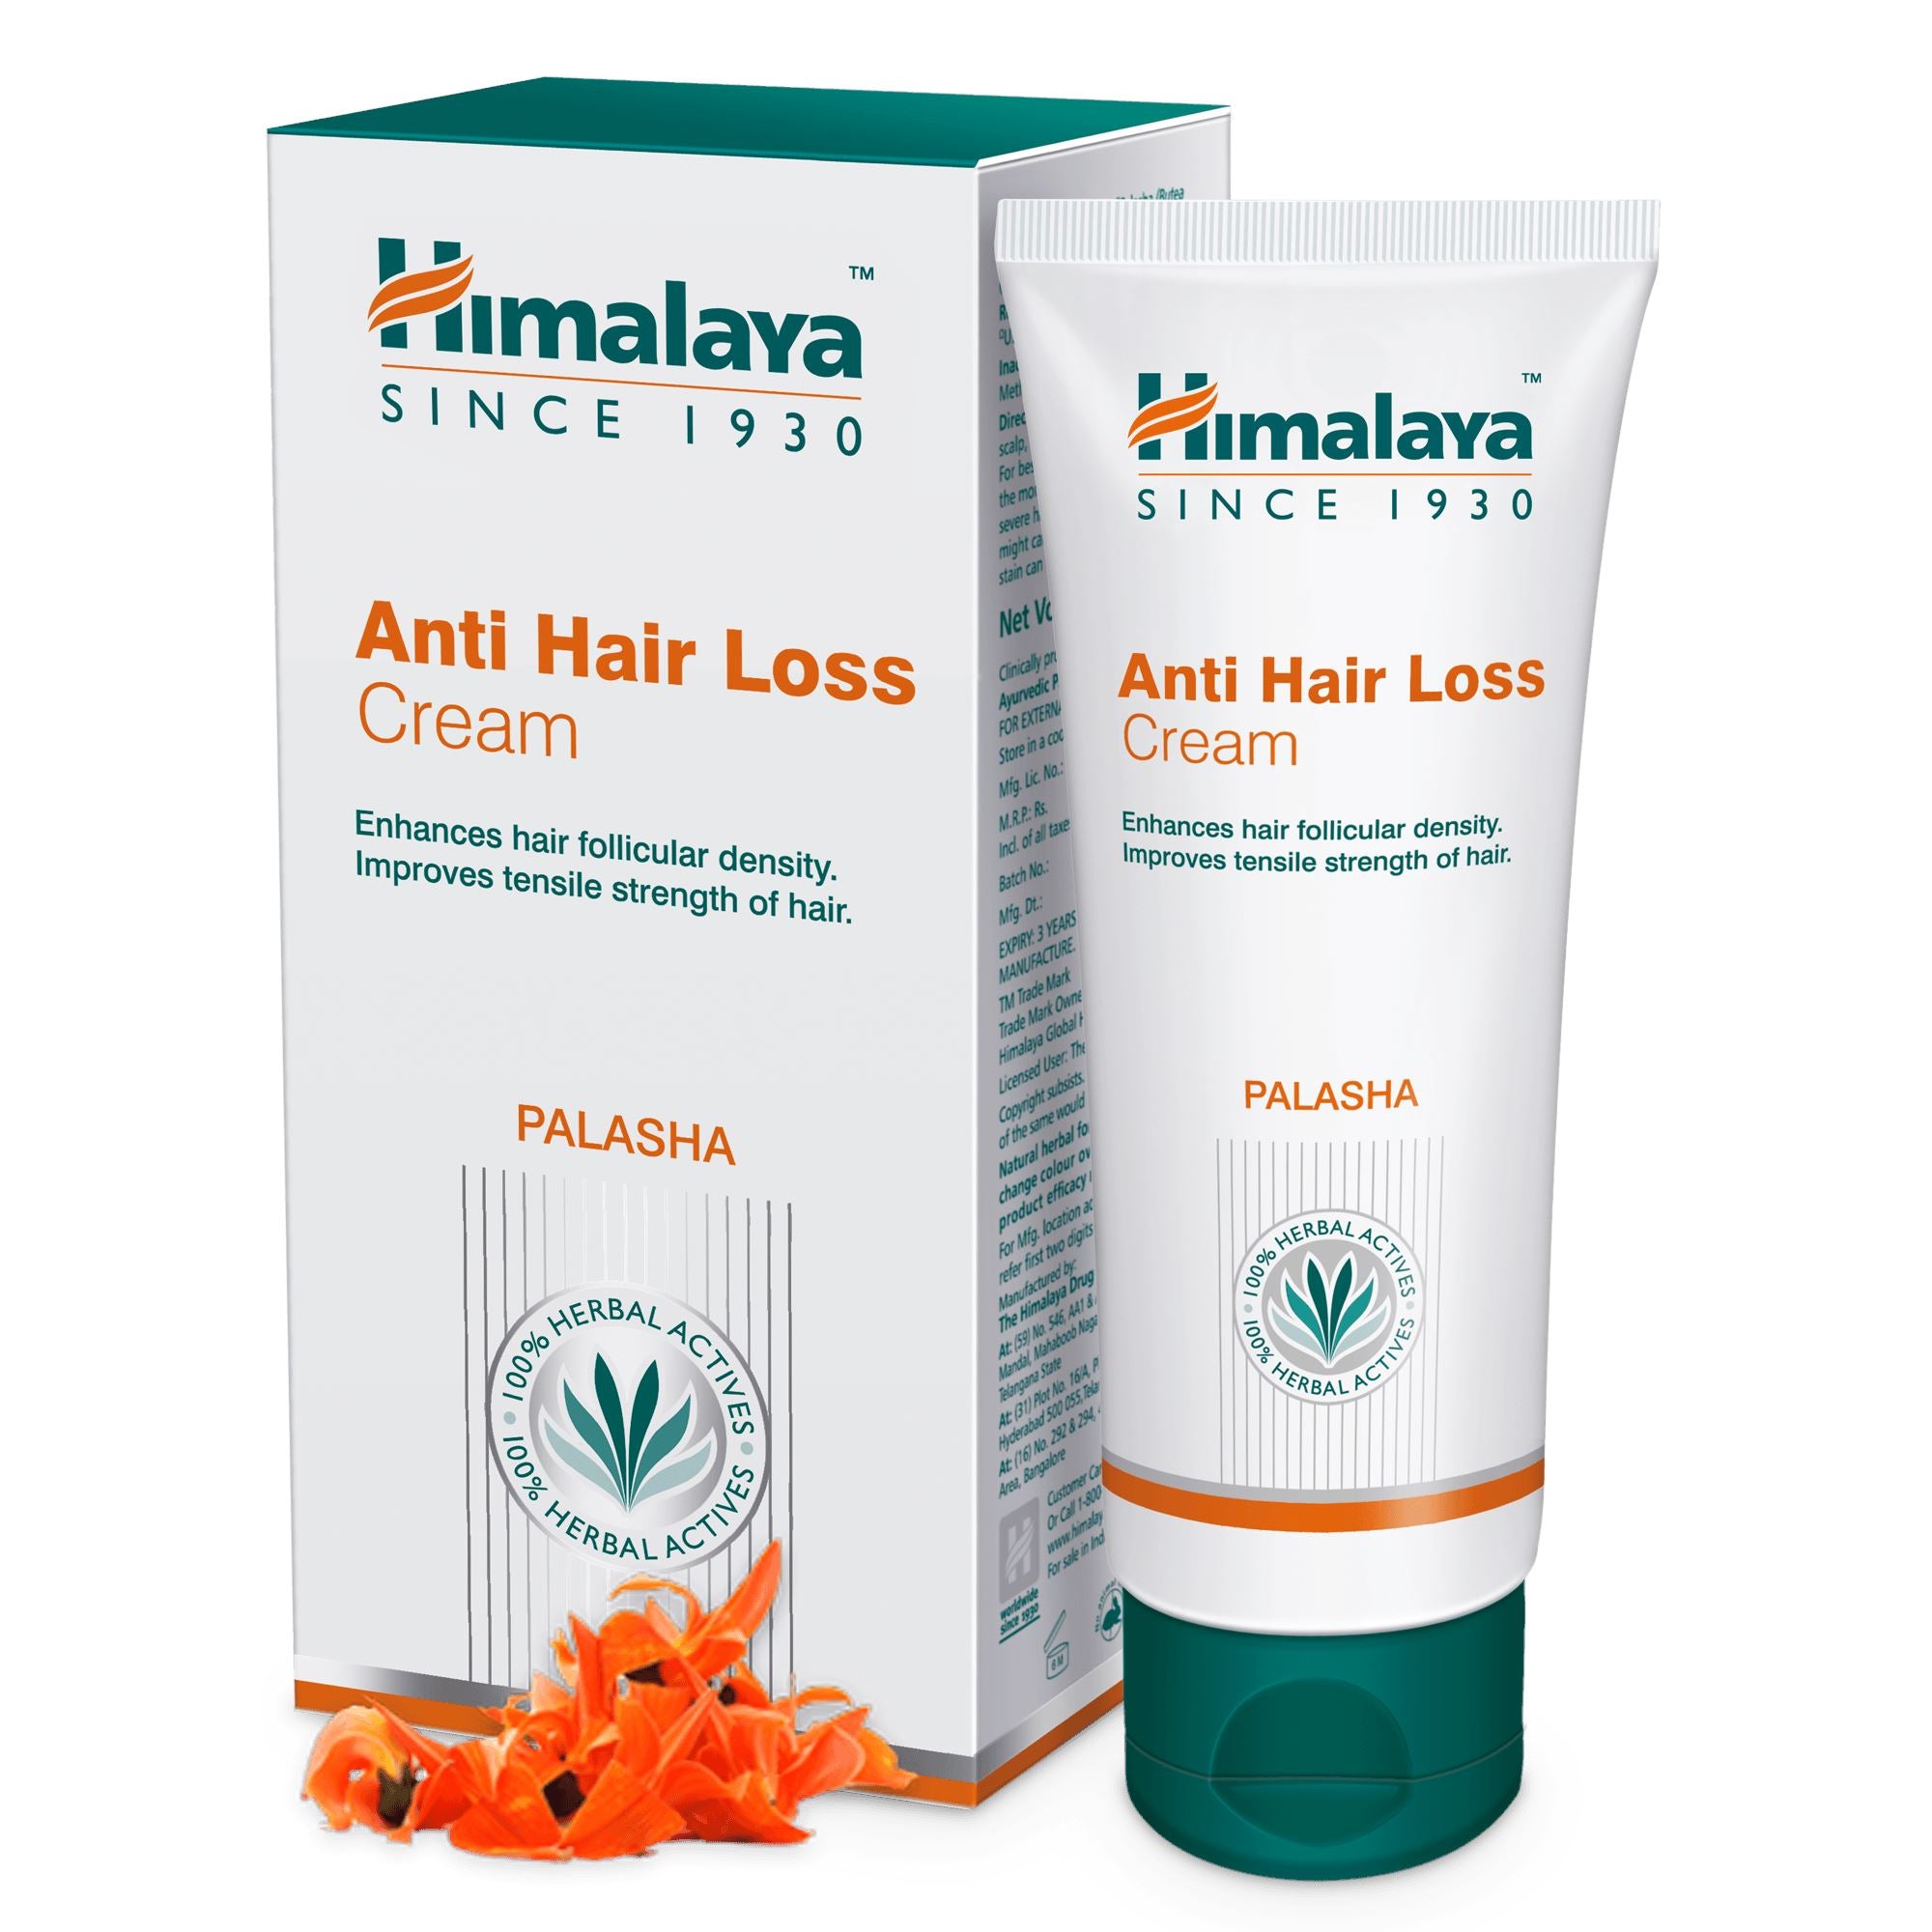 Himalaya Anti Hair Loss Cream 50ml- Promotes hair growth and controls hair fall